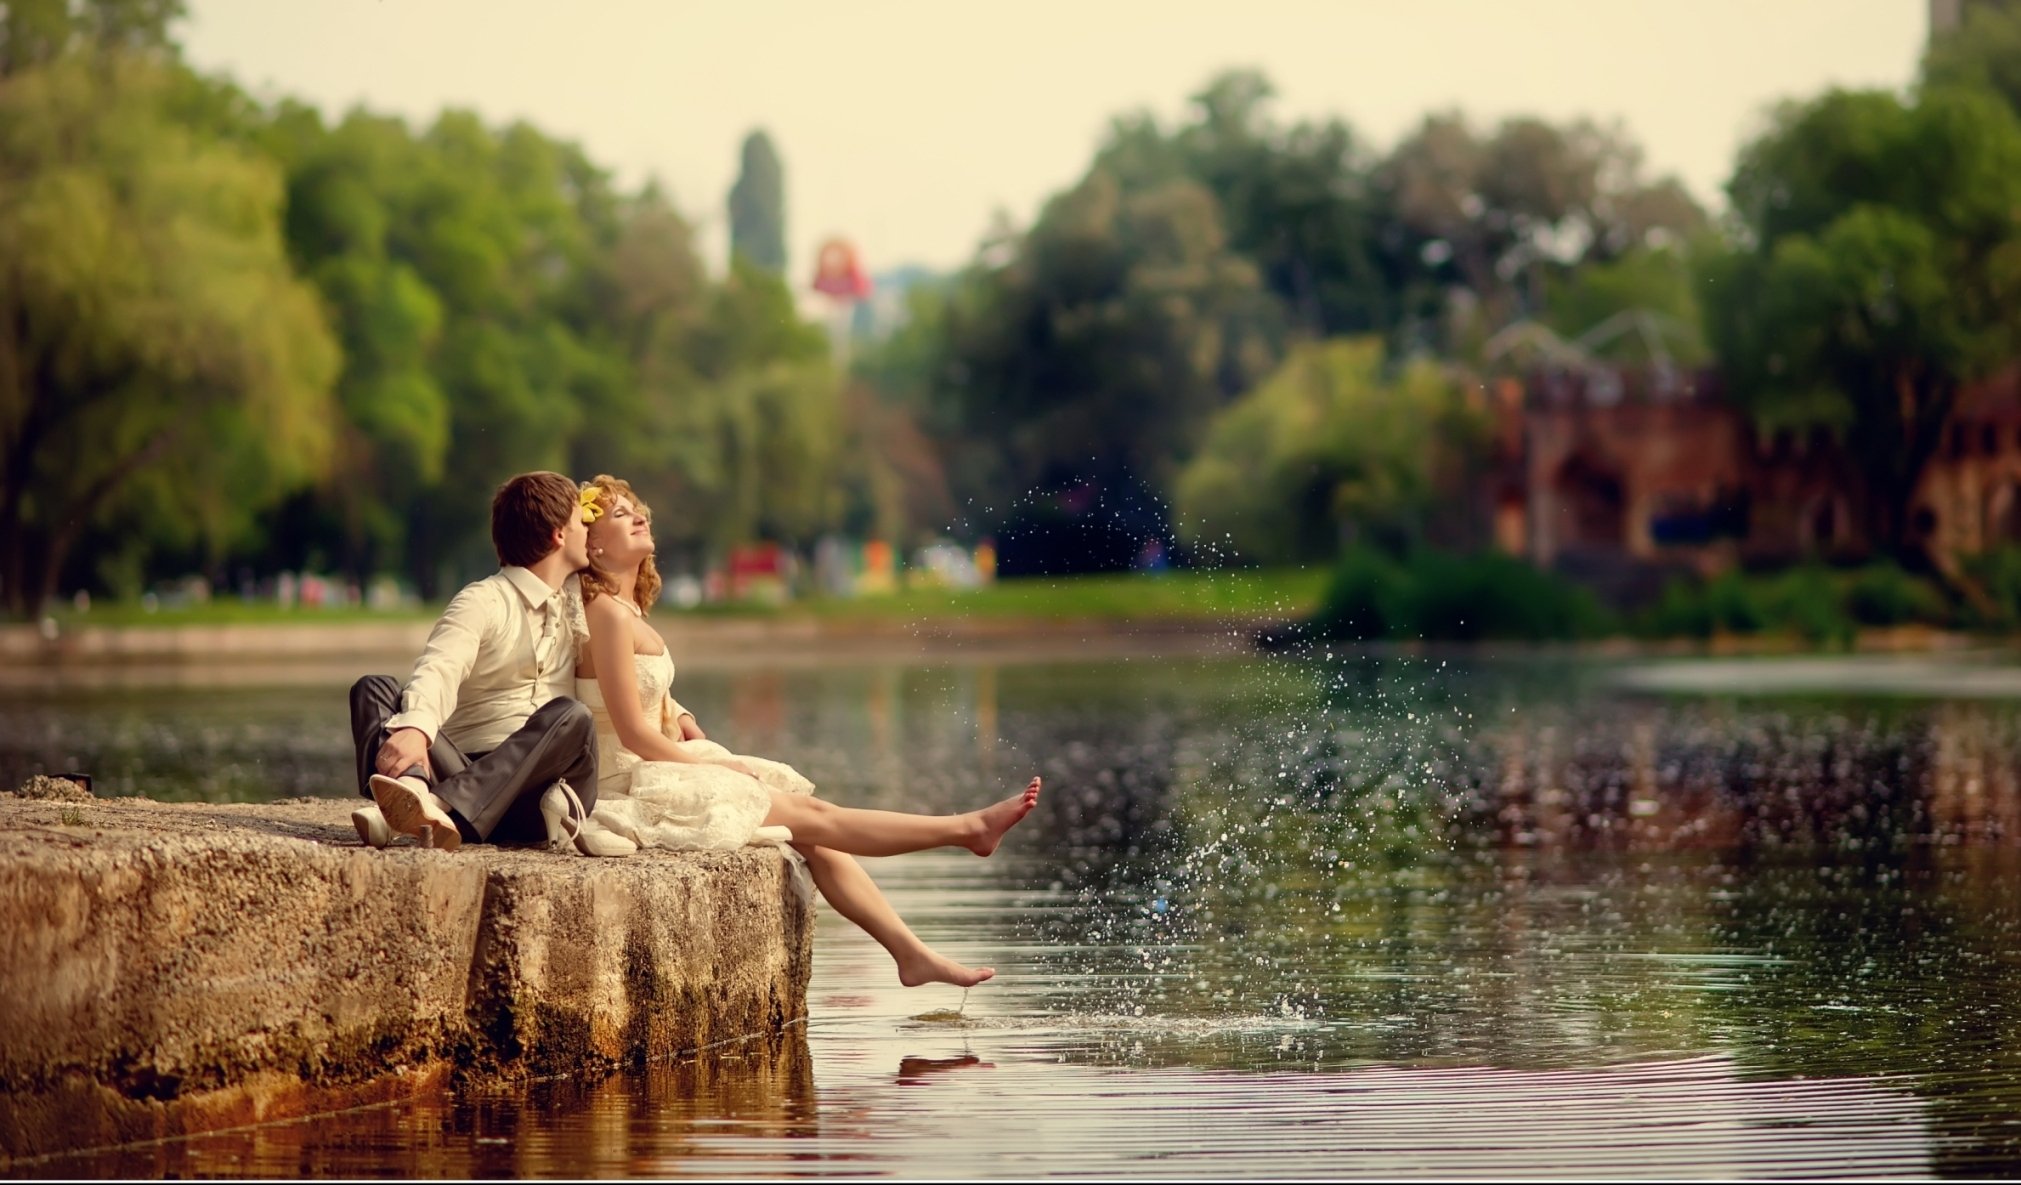 Летний кипишь. Романтичный пейзаж. Влюбленные на речке. Романтическая фотосессия на природе. Весенняя романтика.